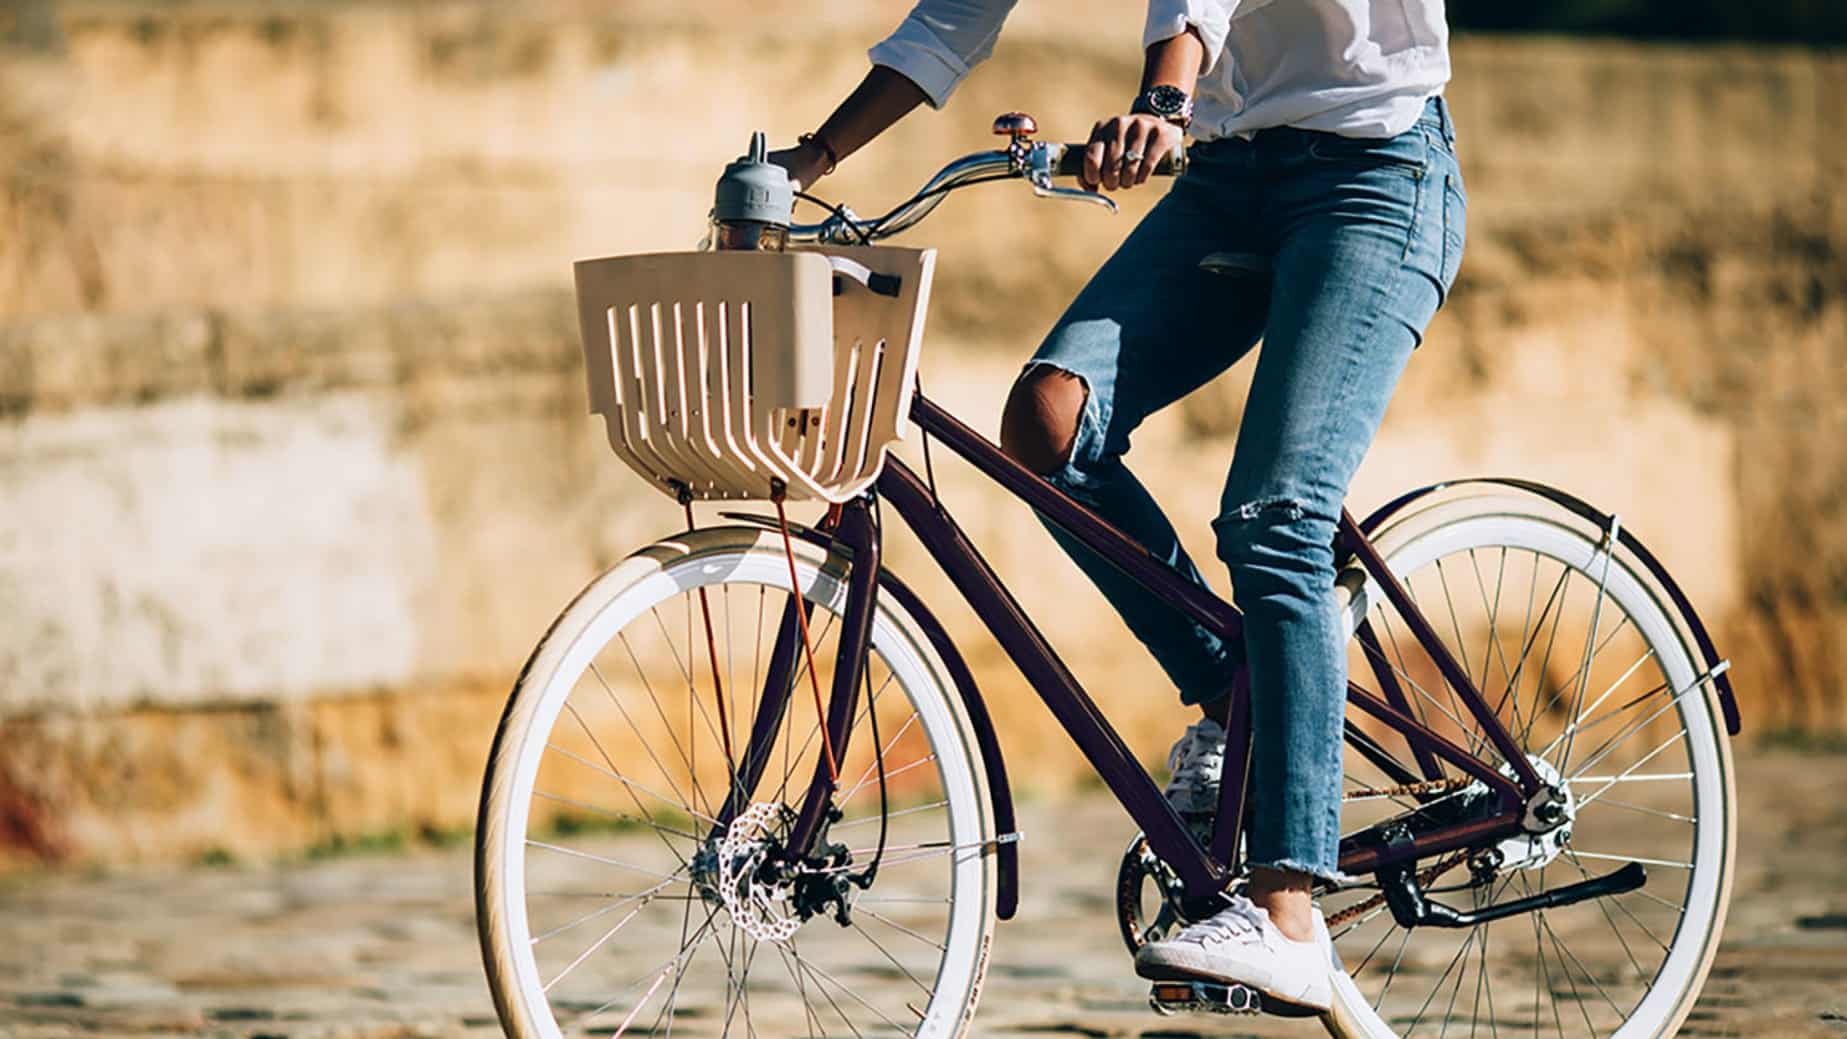 Re:cycle, bicicleta feita a partir de cápsulas Nespresso descartadas. Foto: Divulgação.